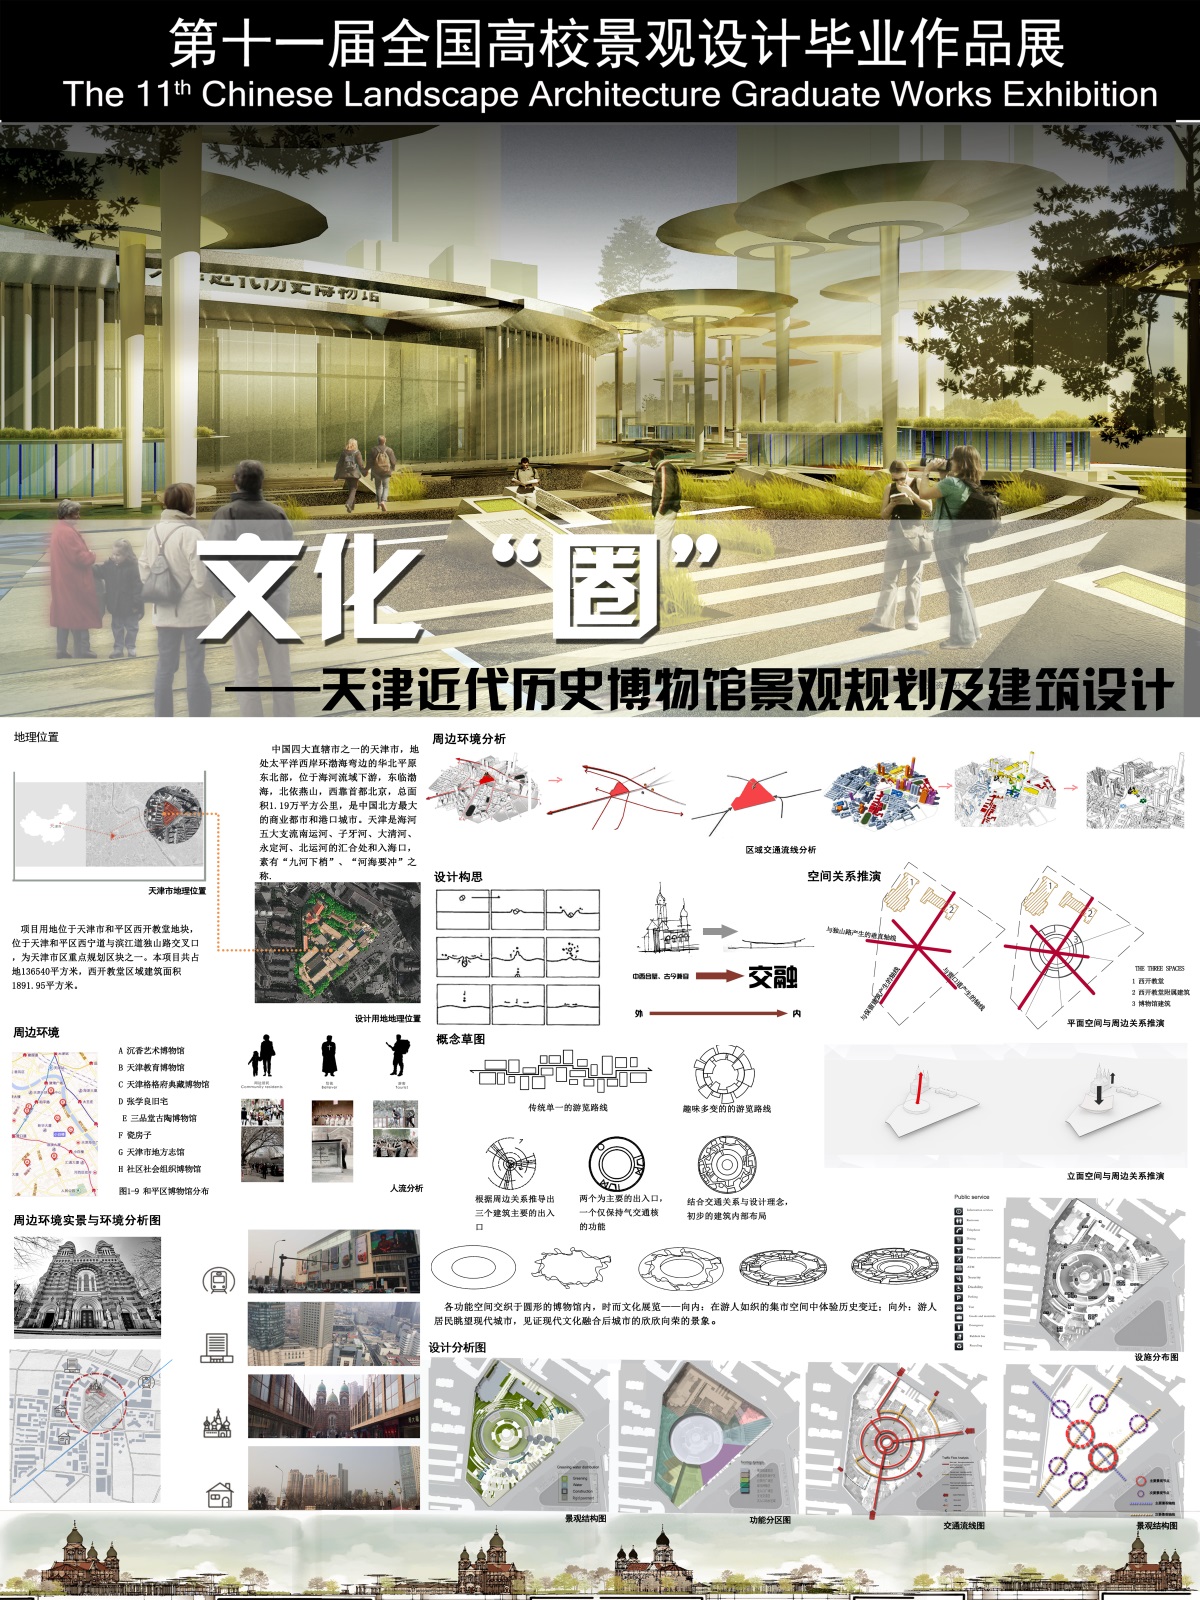 文化”圈”——天津近代历史博物馆景观规划及建筑设计-1